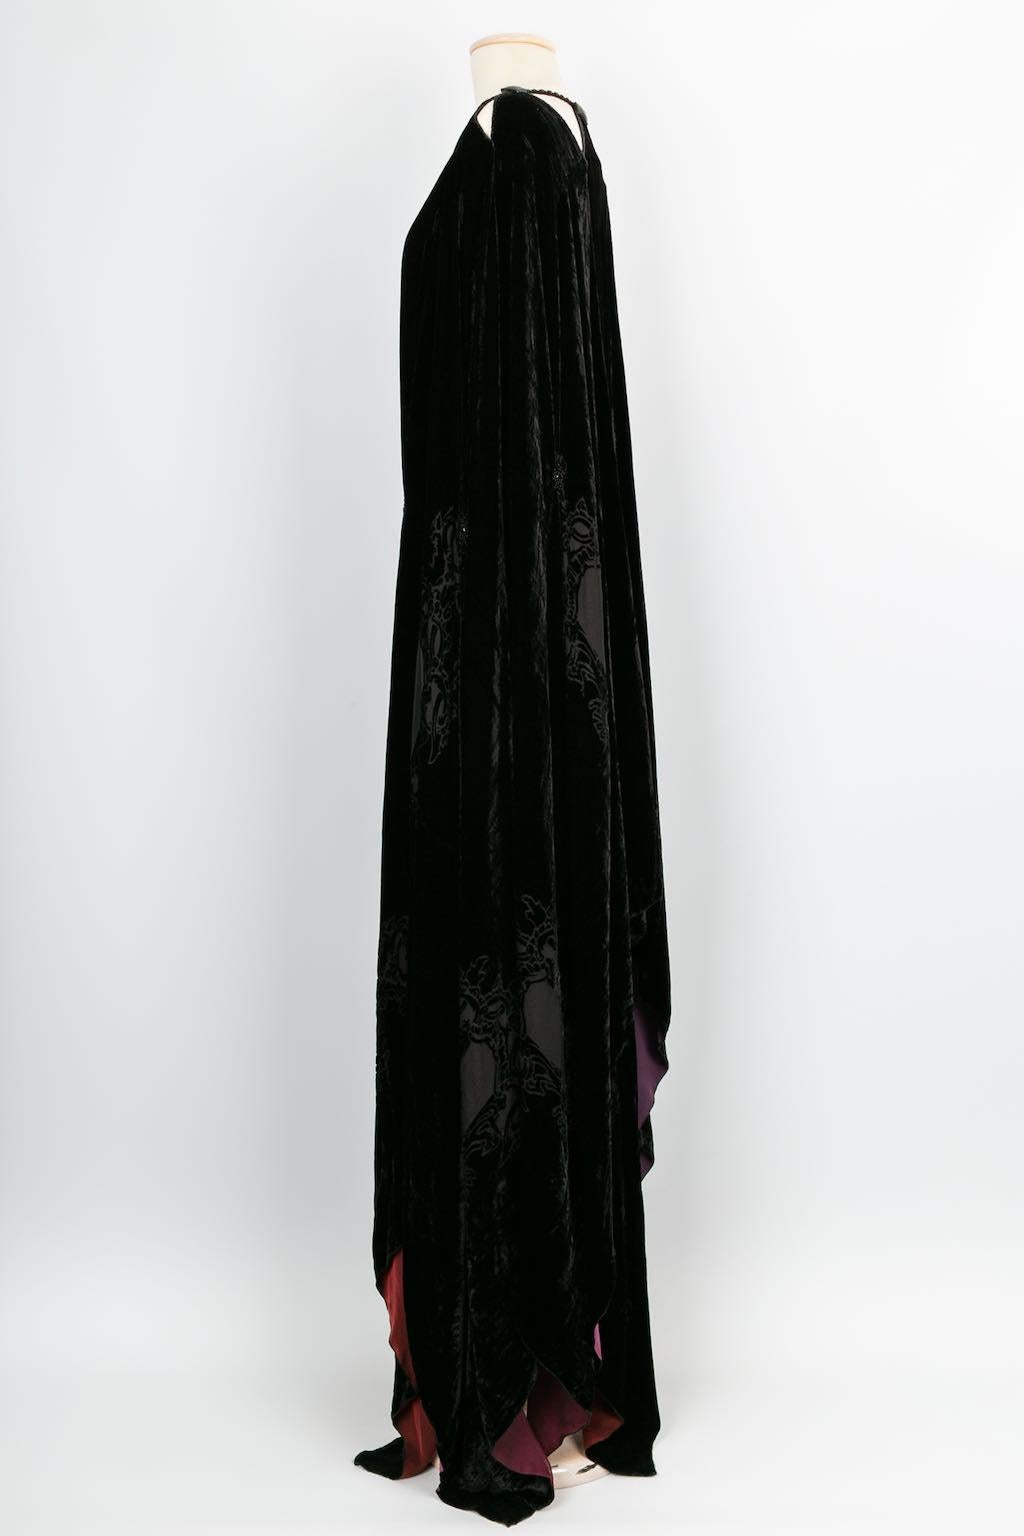 Black Franck Sorbier Haute Couture Cape in Velvet, 2014/15 For Sale